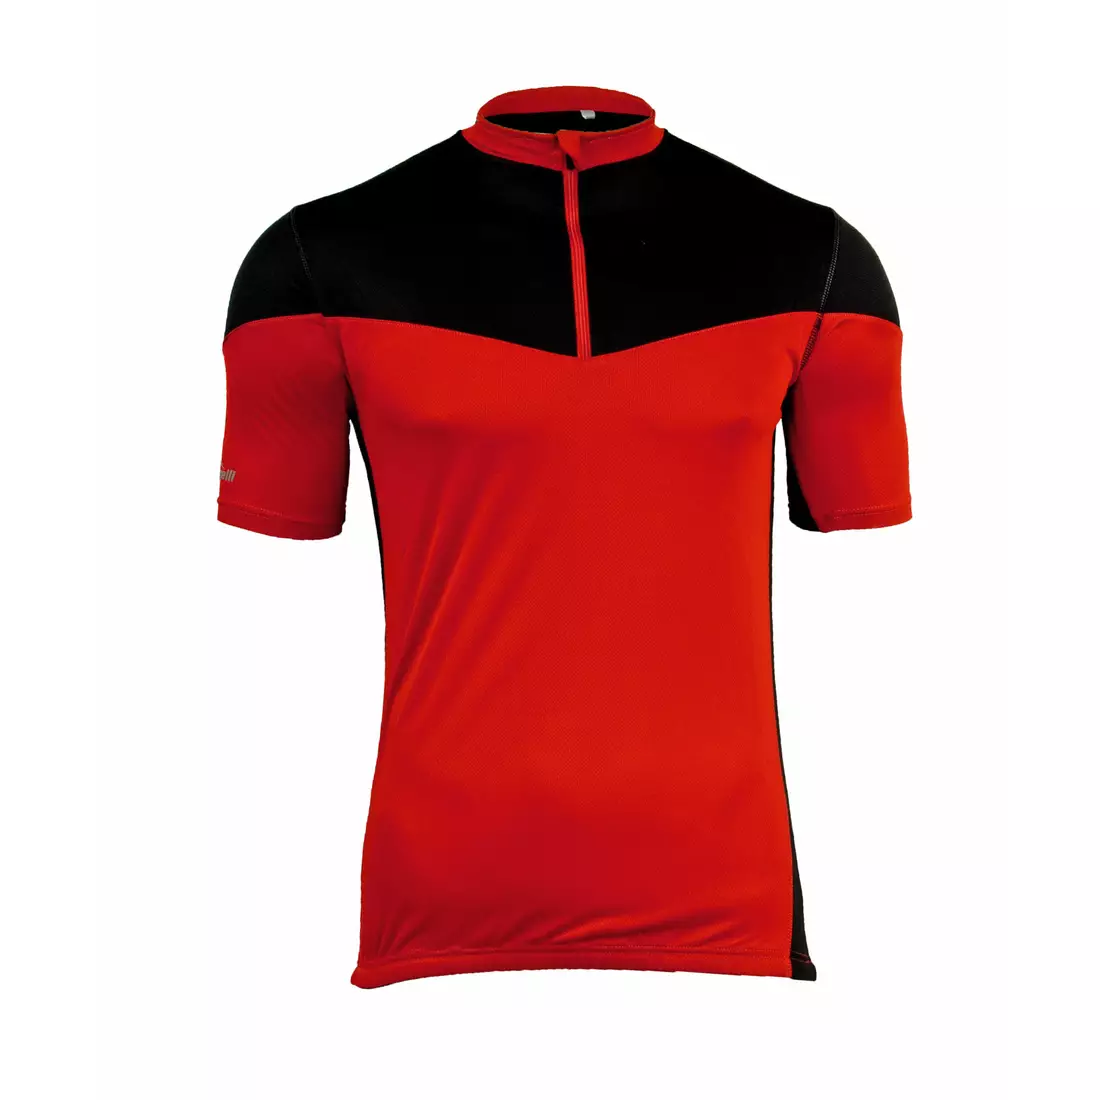 Cyklistický dres ROGELLI MAZZIN 001.059, červeno-černý